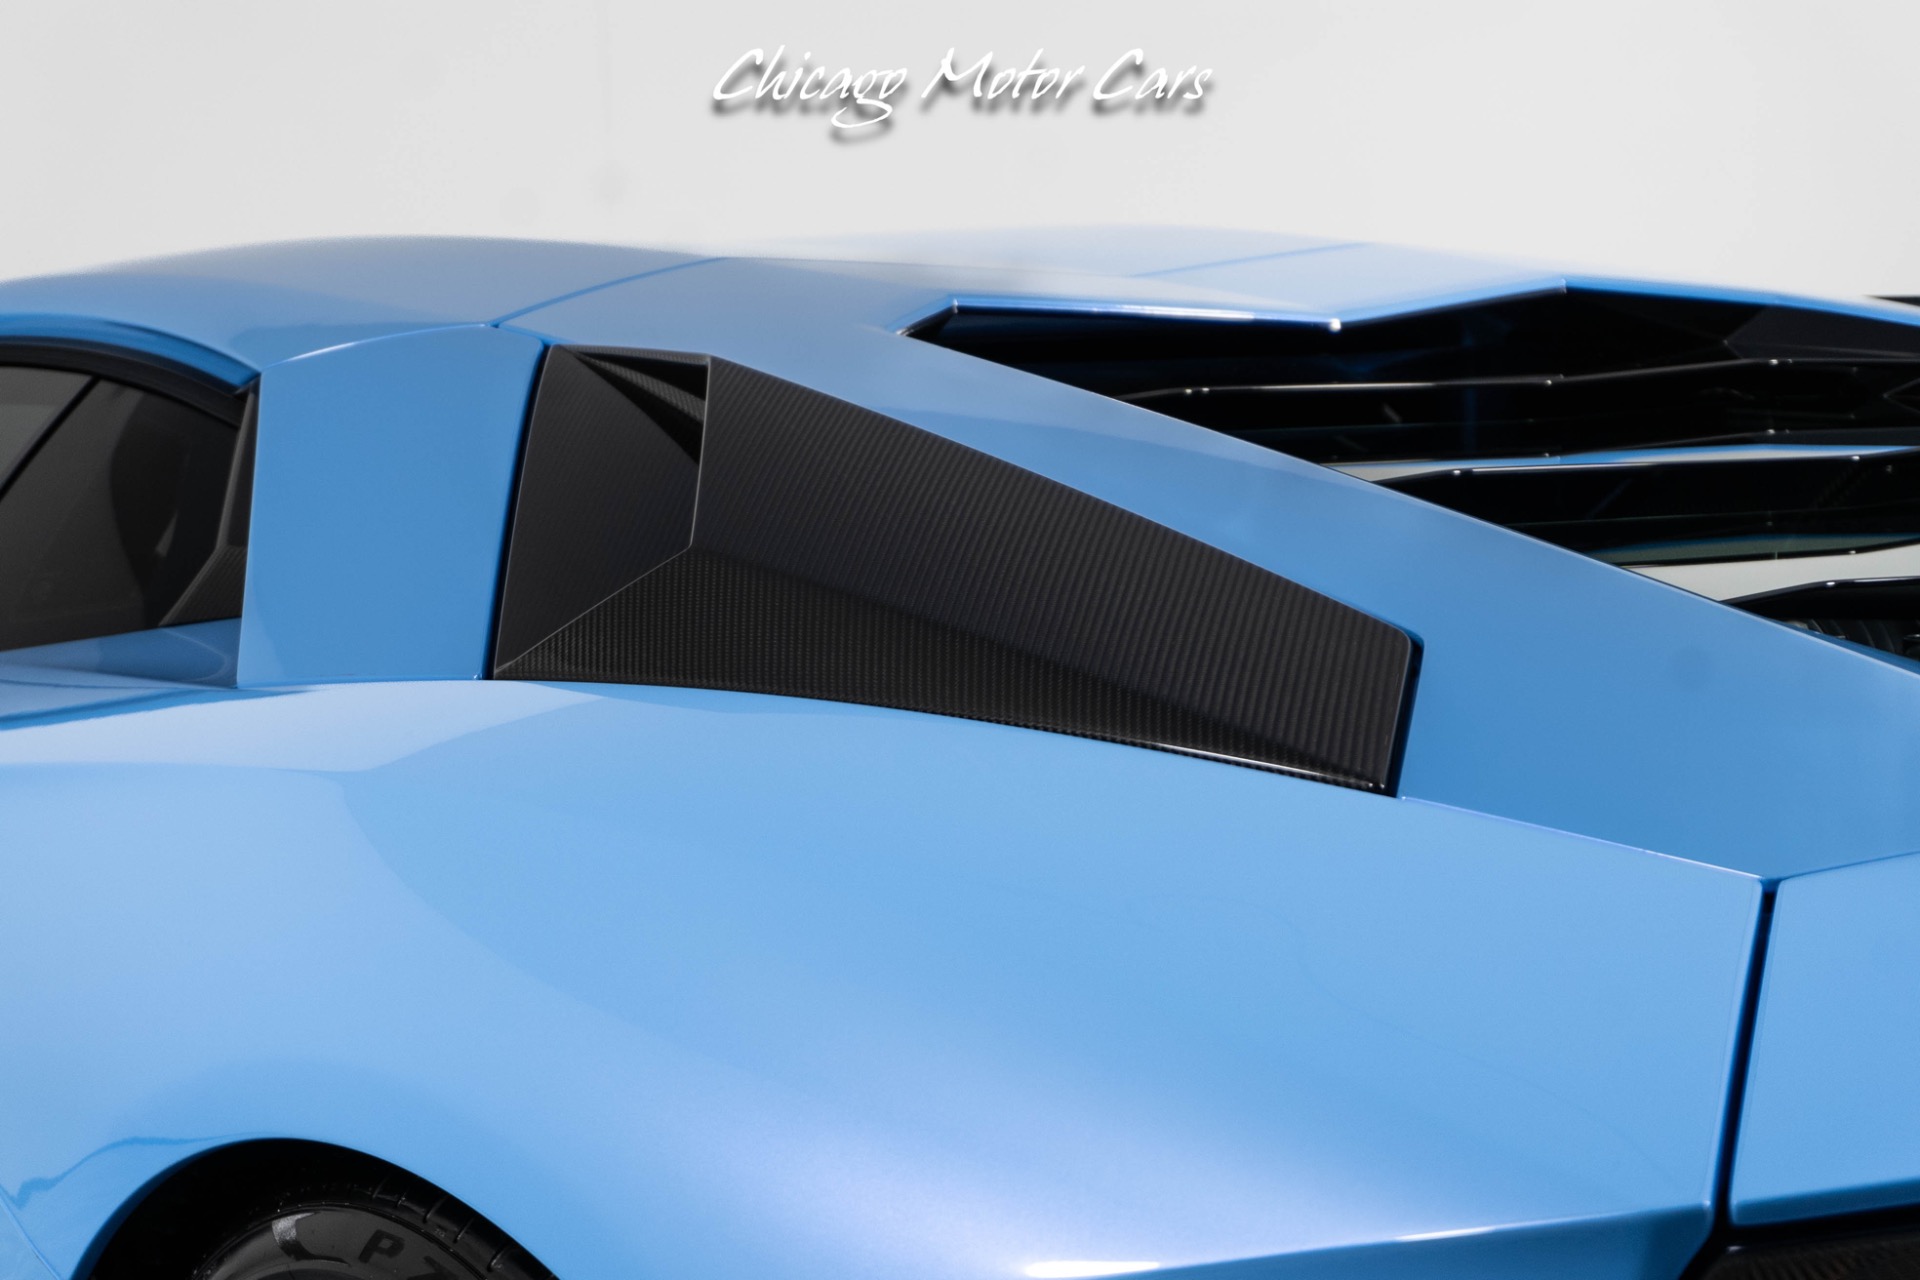 Used-2018-Lamborghini-Aventador-S-LP740-4-DME-Stage-2-Full-PPF-IPE-Exhaust-Blu-Cepheus-Loaded